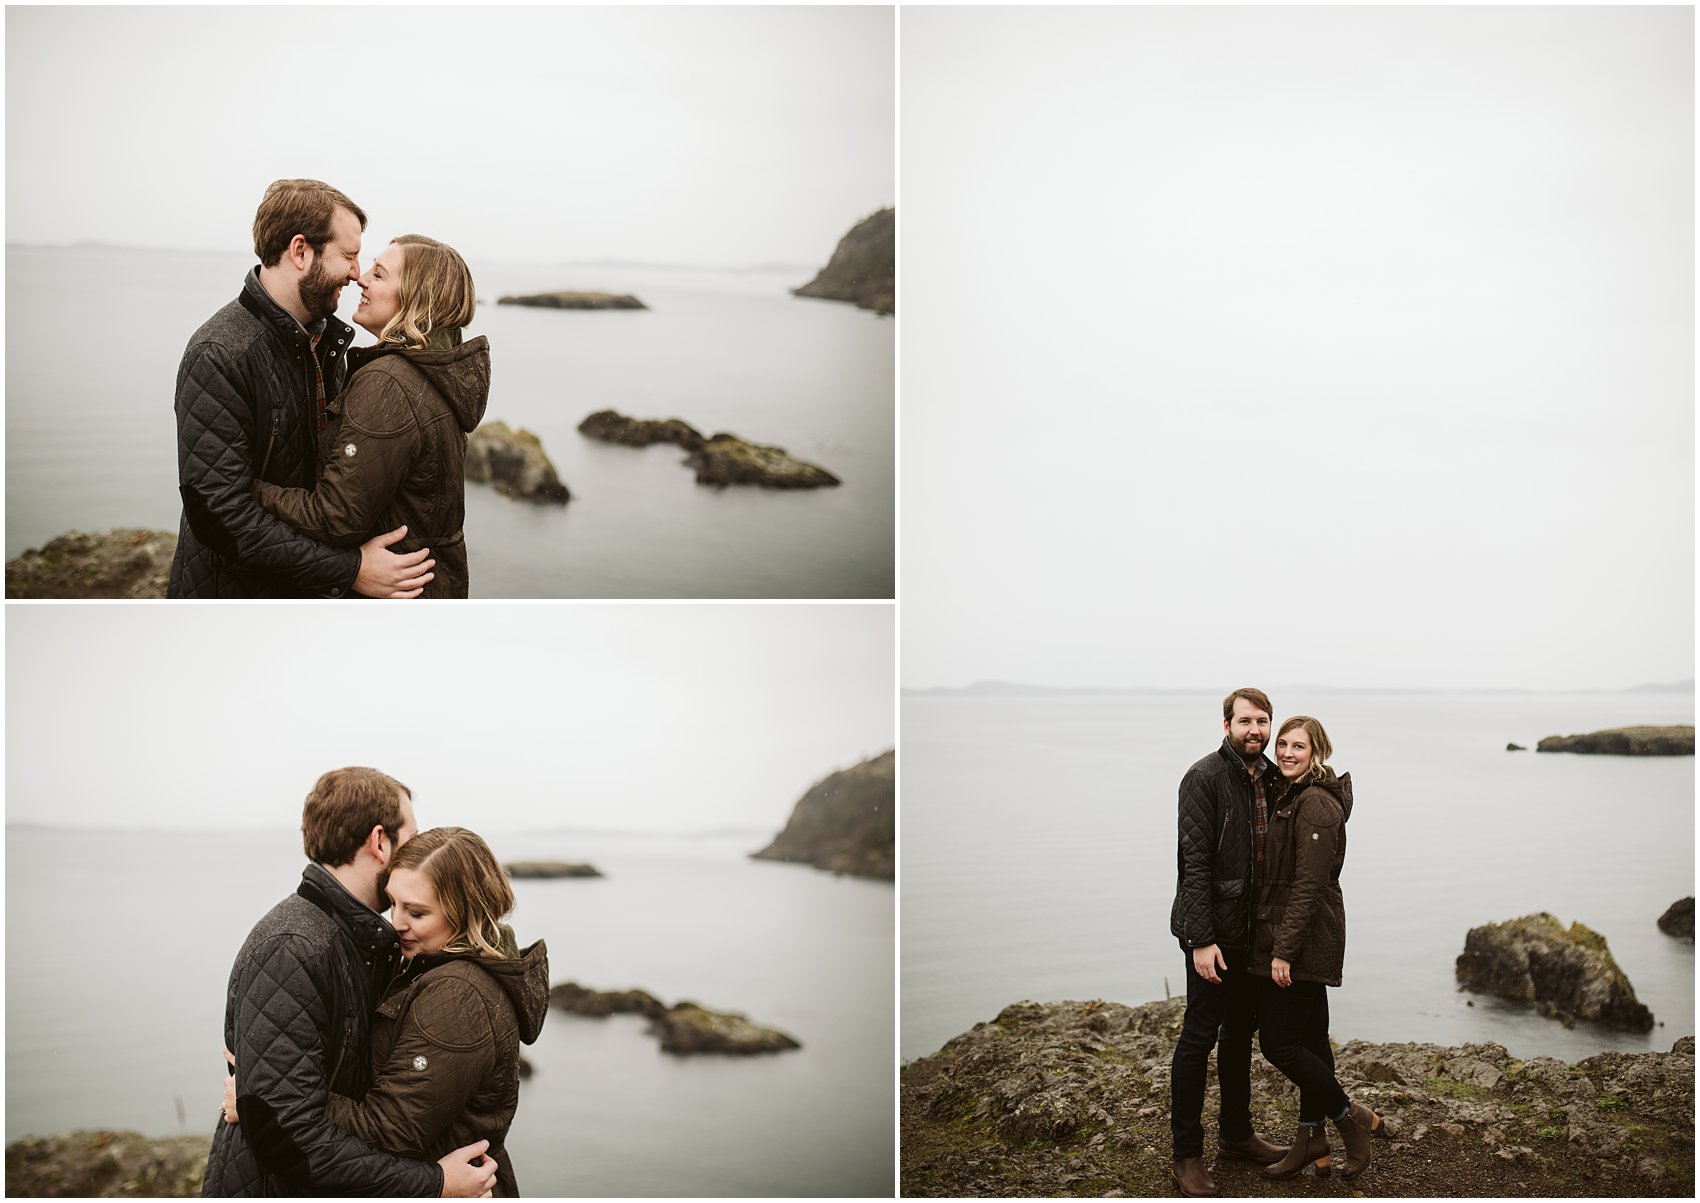 Hug and kiss on cliff